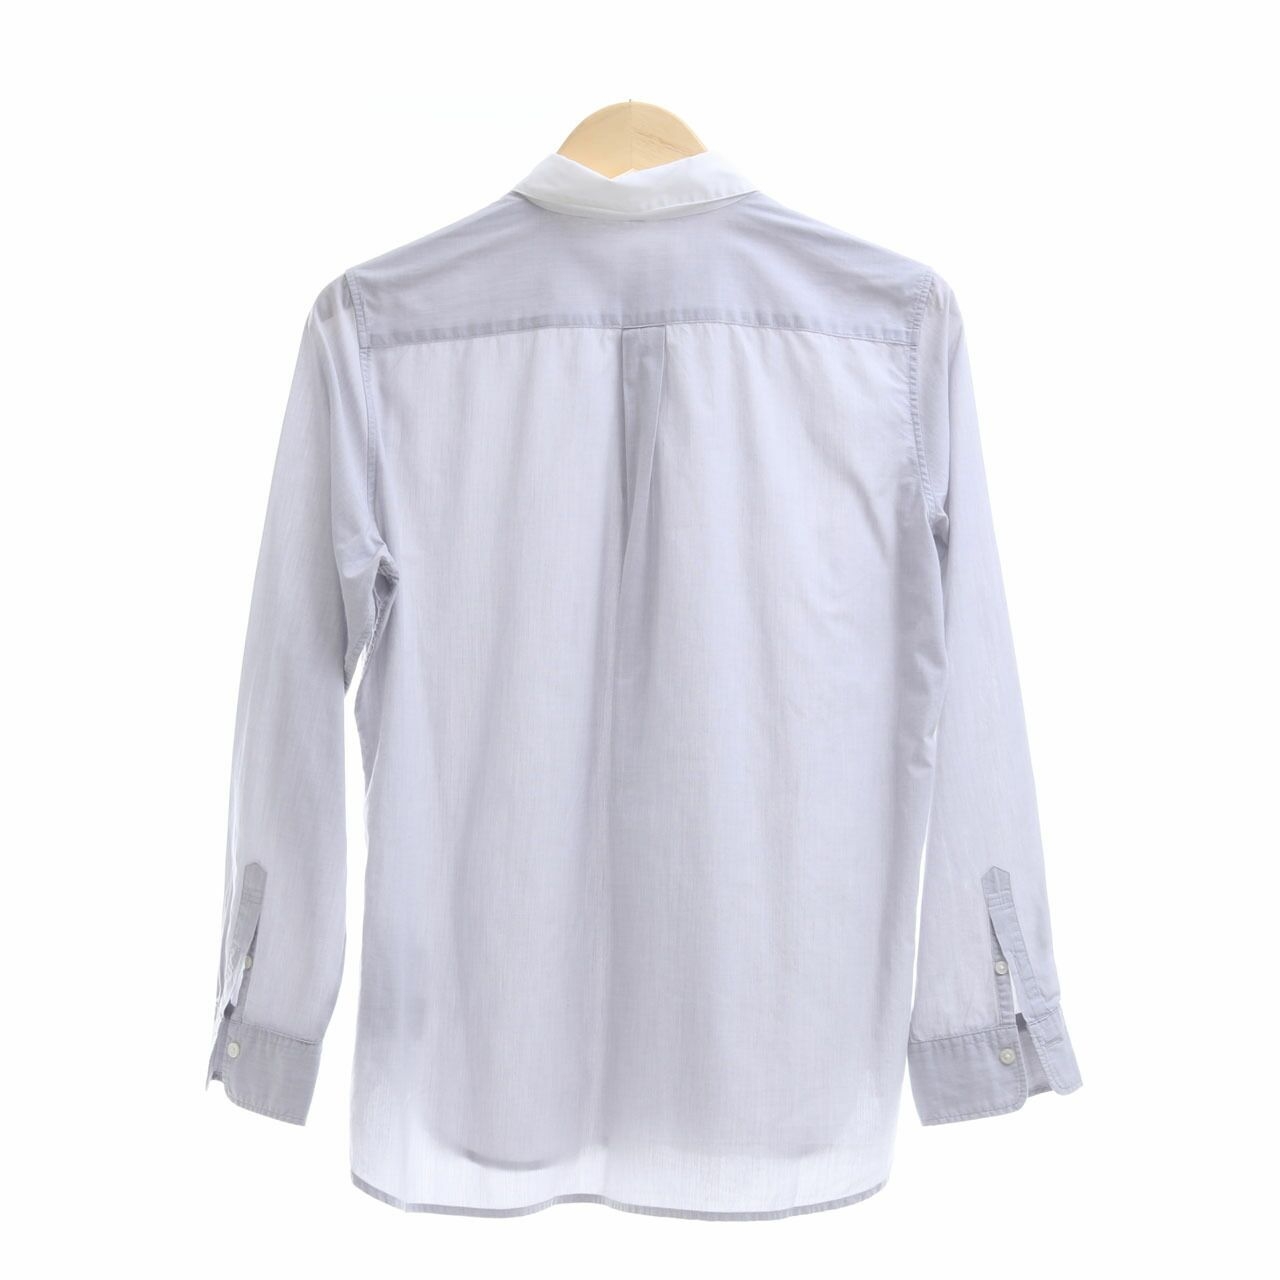 Muji Light Grey Shirt